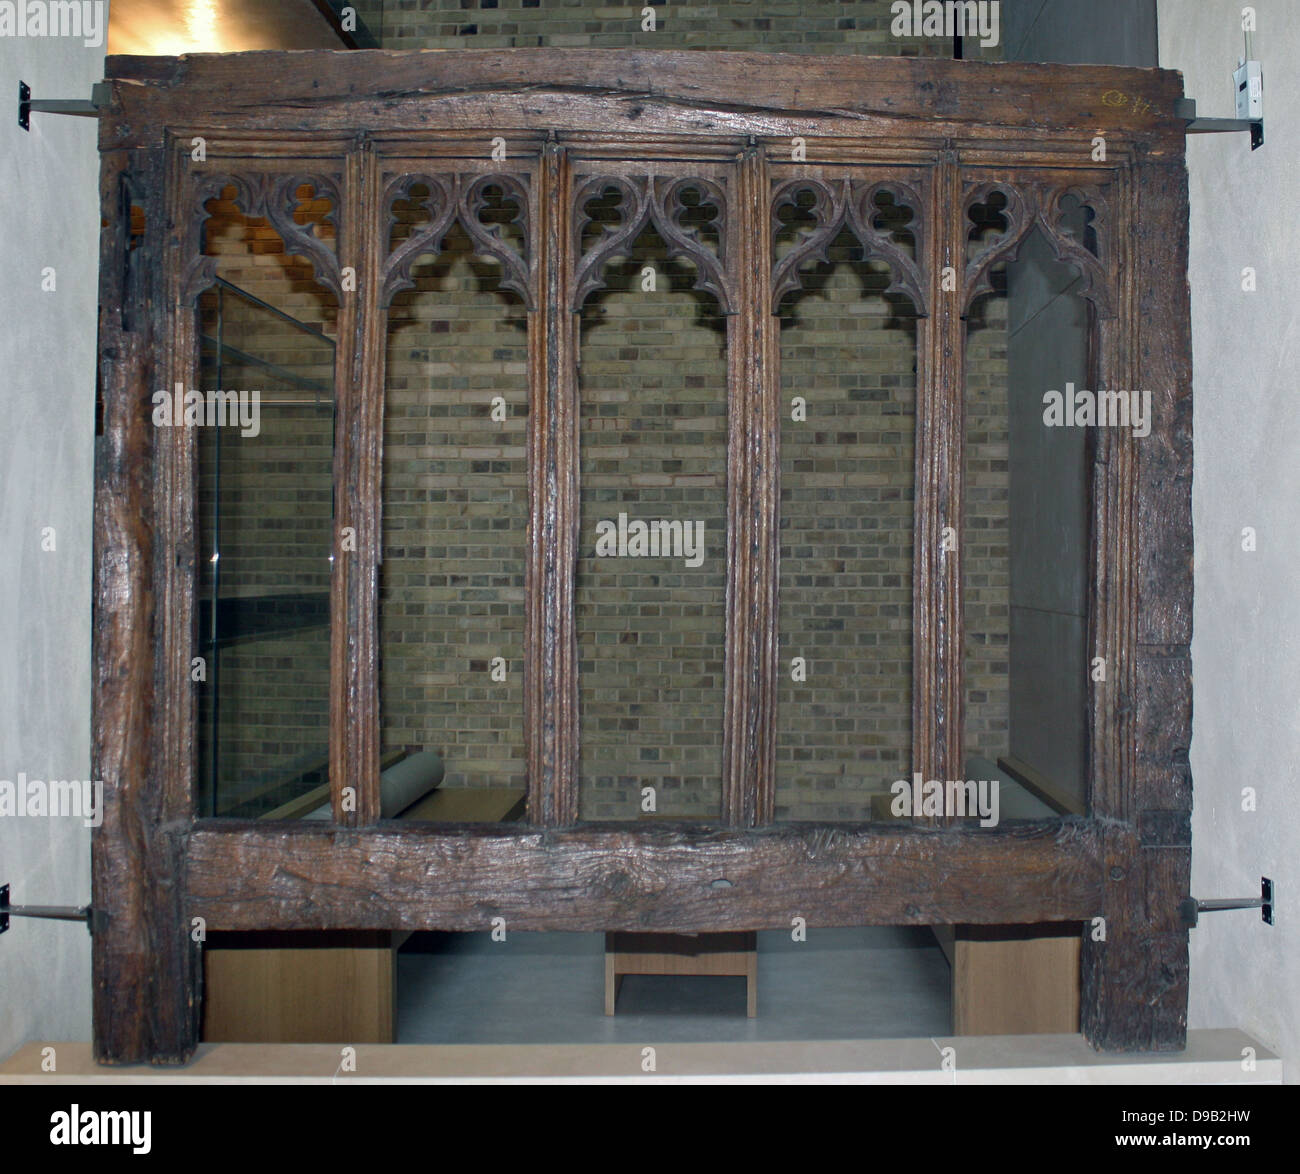 Fensterrahmen 1475-1500. Eiche, Suffolk, England. Dieses Fenster ist mit aufwändigen Gotischen Maßwerk geschnitzt. Es würde niemals flazed wurden und statt das Wetter war mit Fensterläden gehalten, möglicherweise sowohl innen als auch außen. Paar Fenster von diesem Datum bleiben in ihren ursprünglichen Ort oder Zustand. Stockfoto